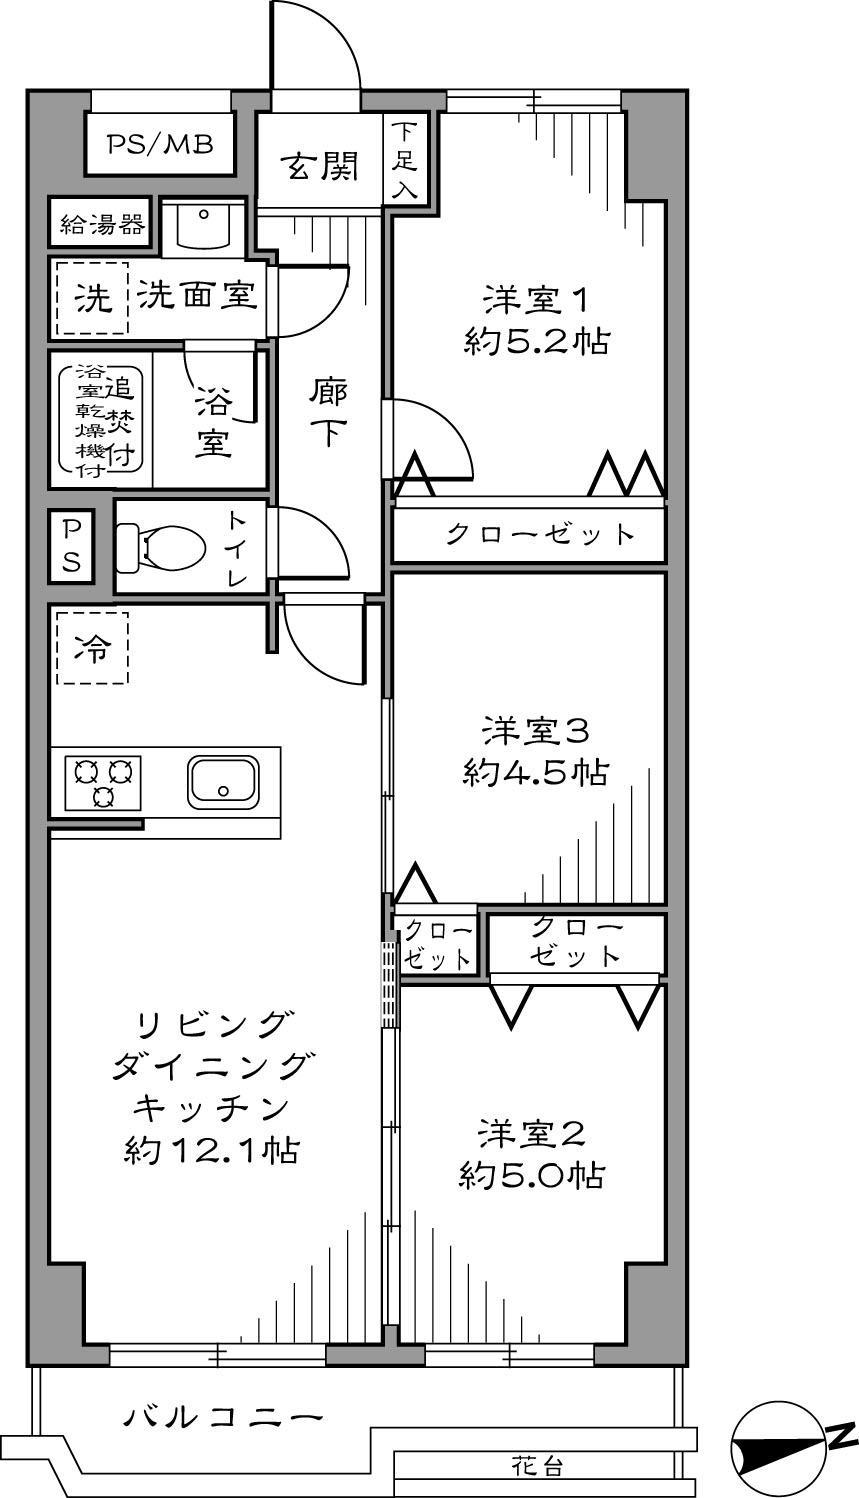 Floor plan. 3LDK 59.40 sq m